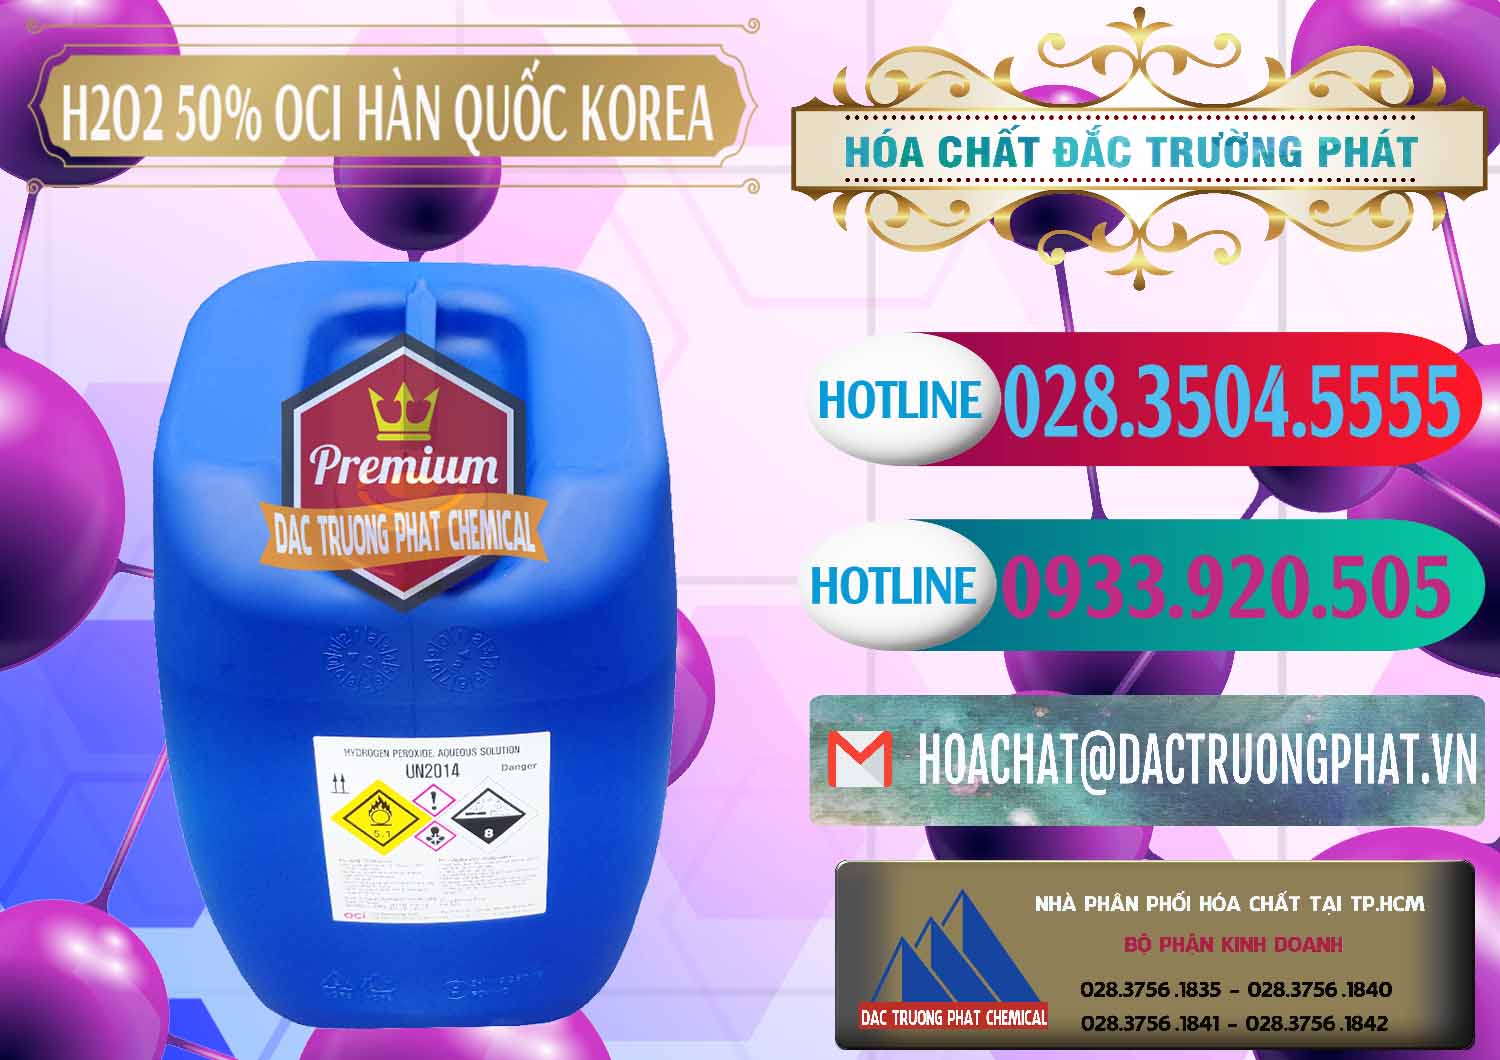 Cty phân phối và bán H2O2 - Hydrogen Peroxide 50% OCI Hàn Quốc Korea - 0075 - Công ty cung cấp và nhập khẩu hóa chất tại TP.HCM - truongphat.vn